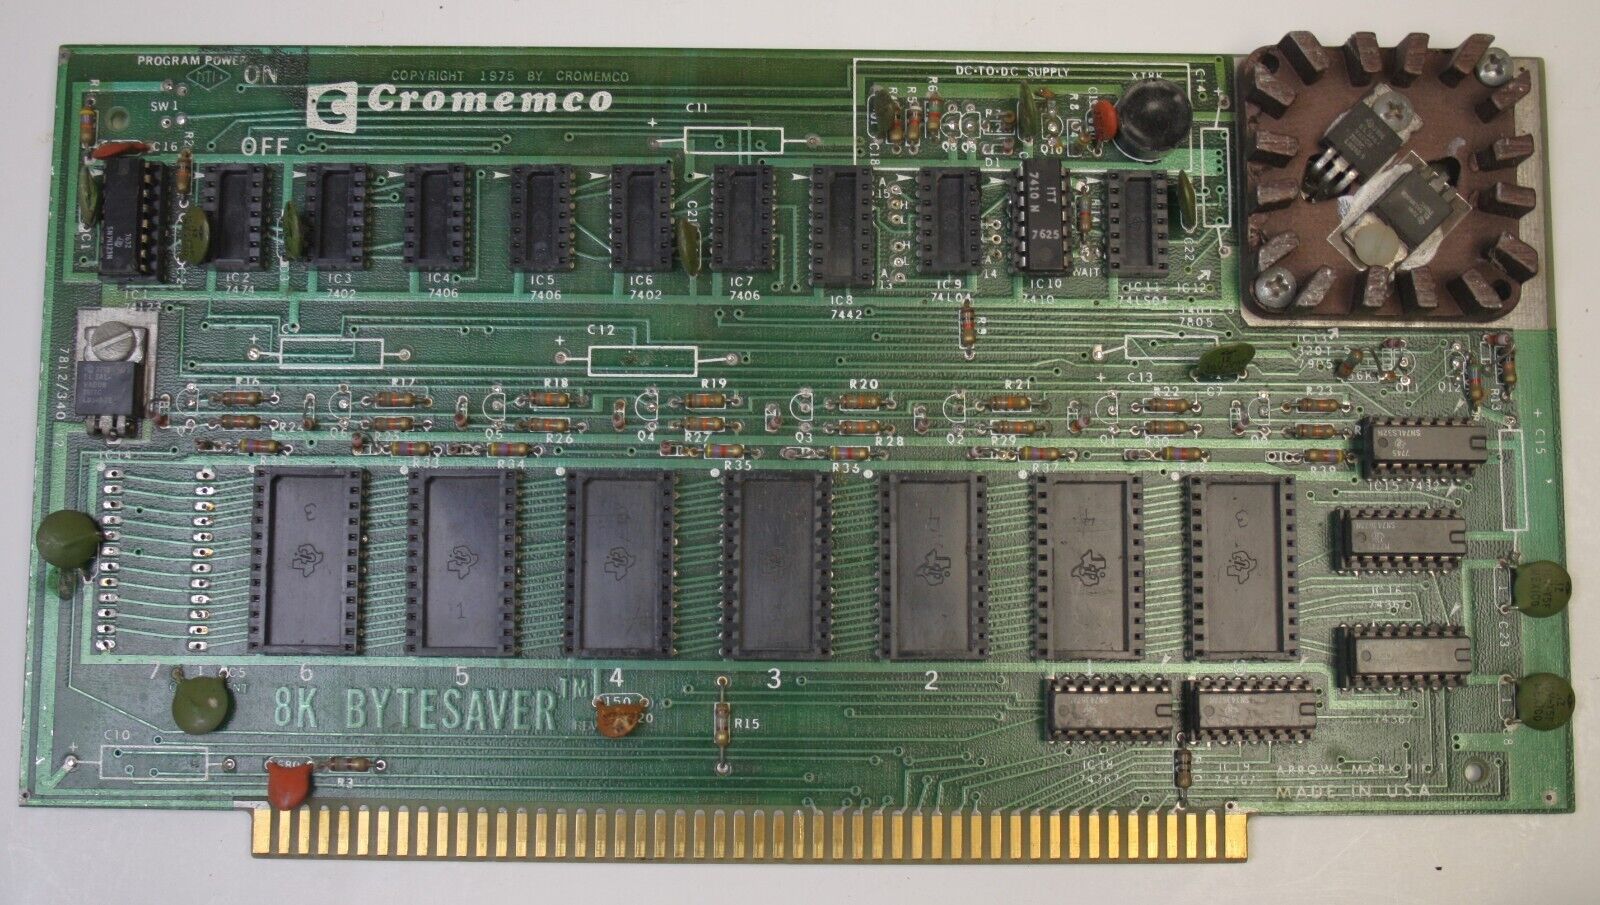 Vtg Cromemco 8K Bytesaver R2 NV Memory & EPROM programmer S100 Board Incomplete